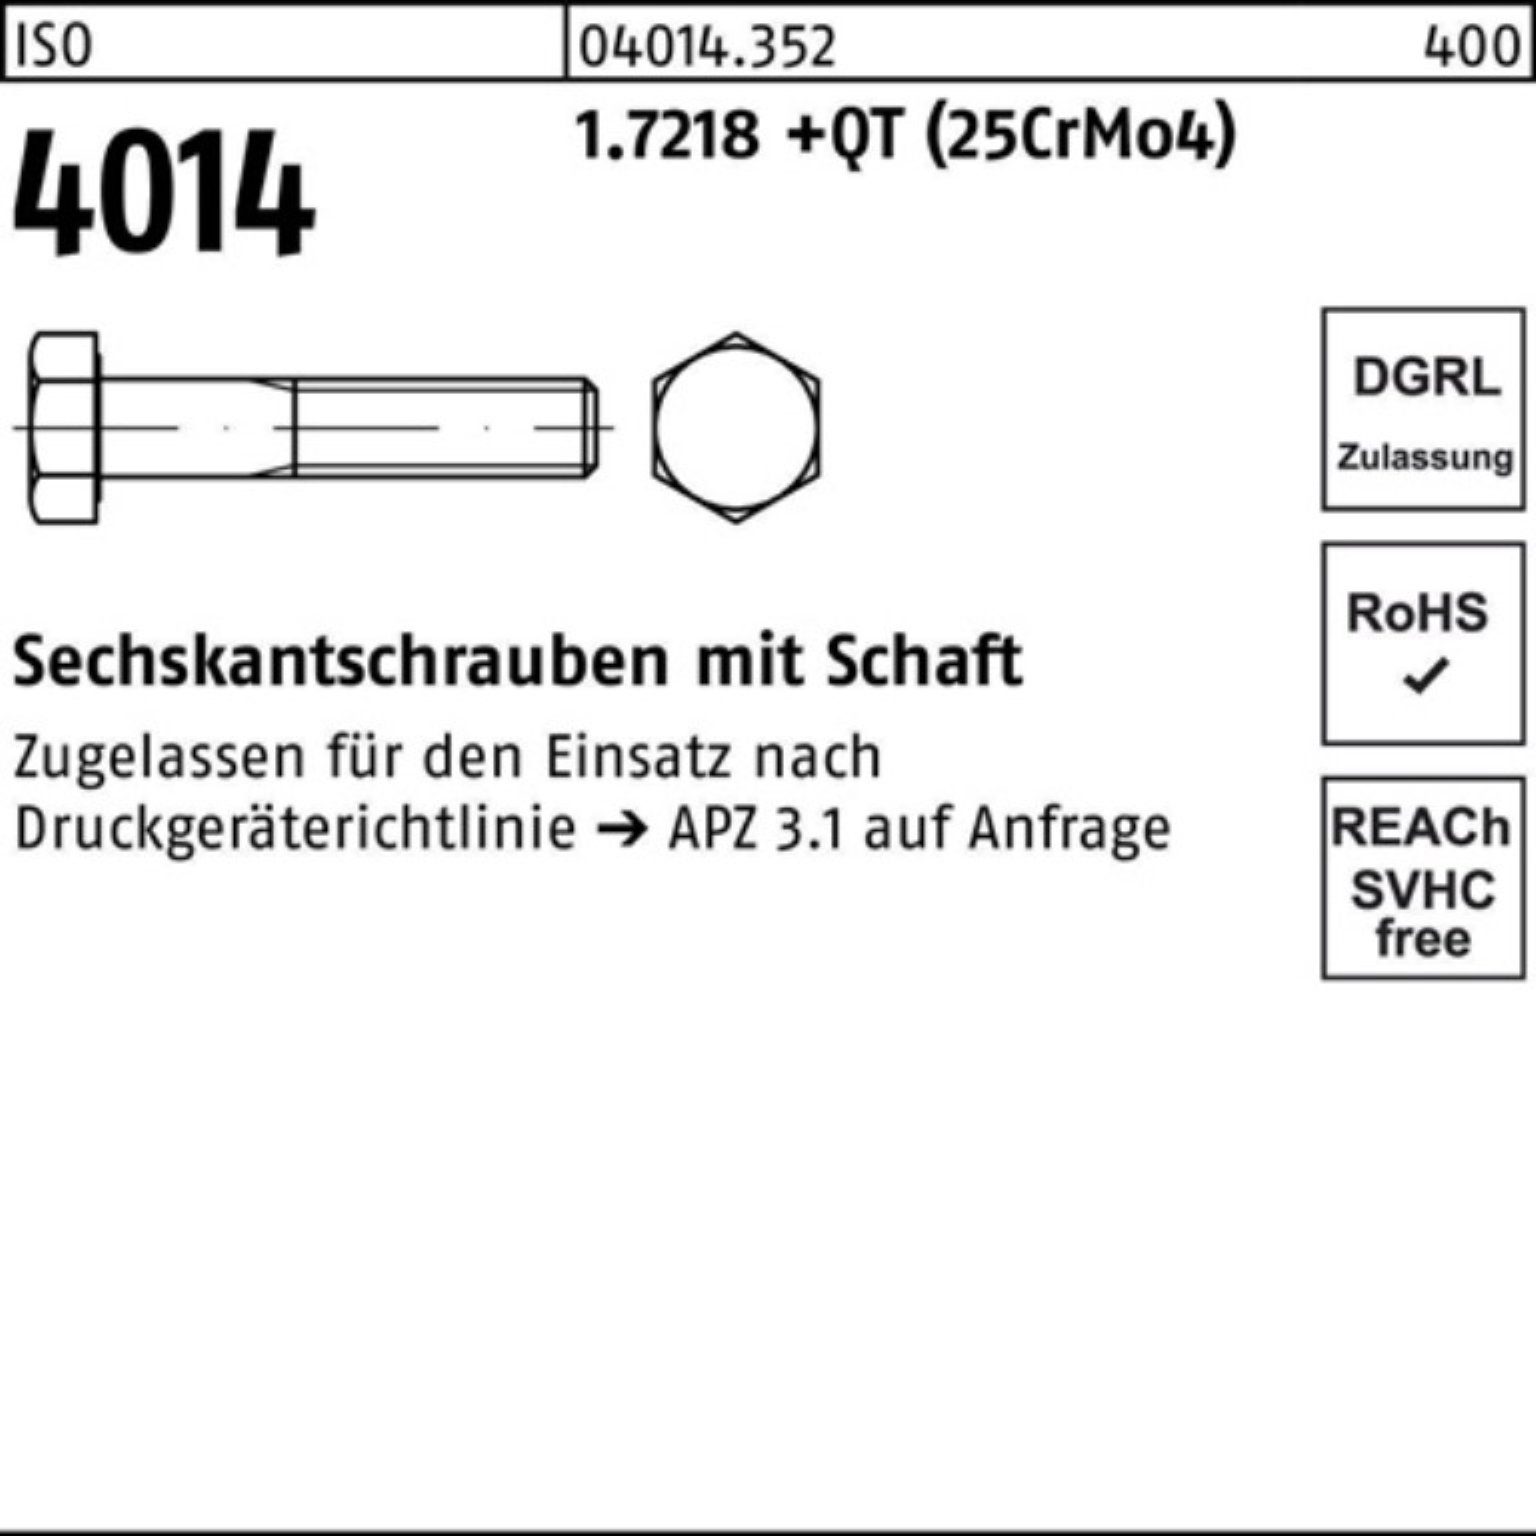 Bufab Sechskantschraube 100er Pack ISO Schaft 130 M30x (25Cr 1.7218 Sechskantschraube 4014 +QT